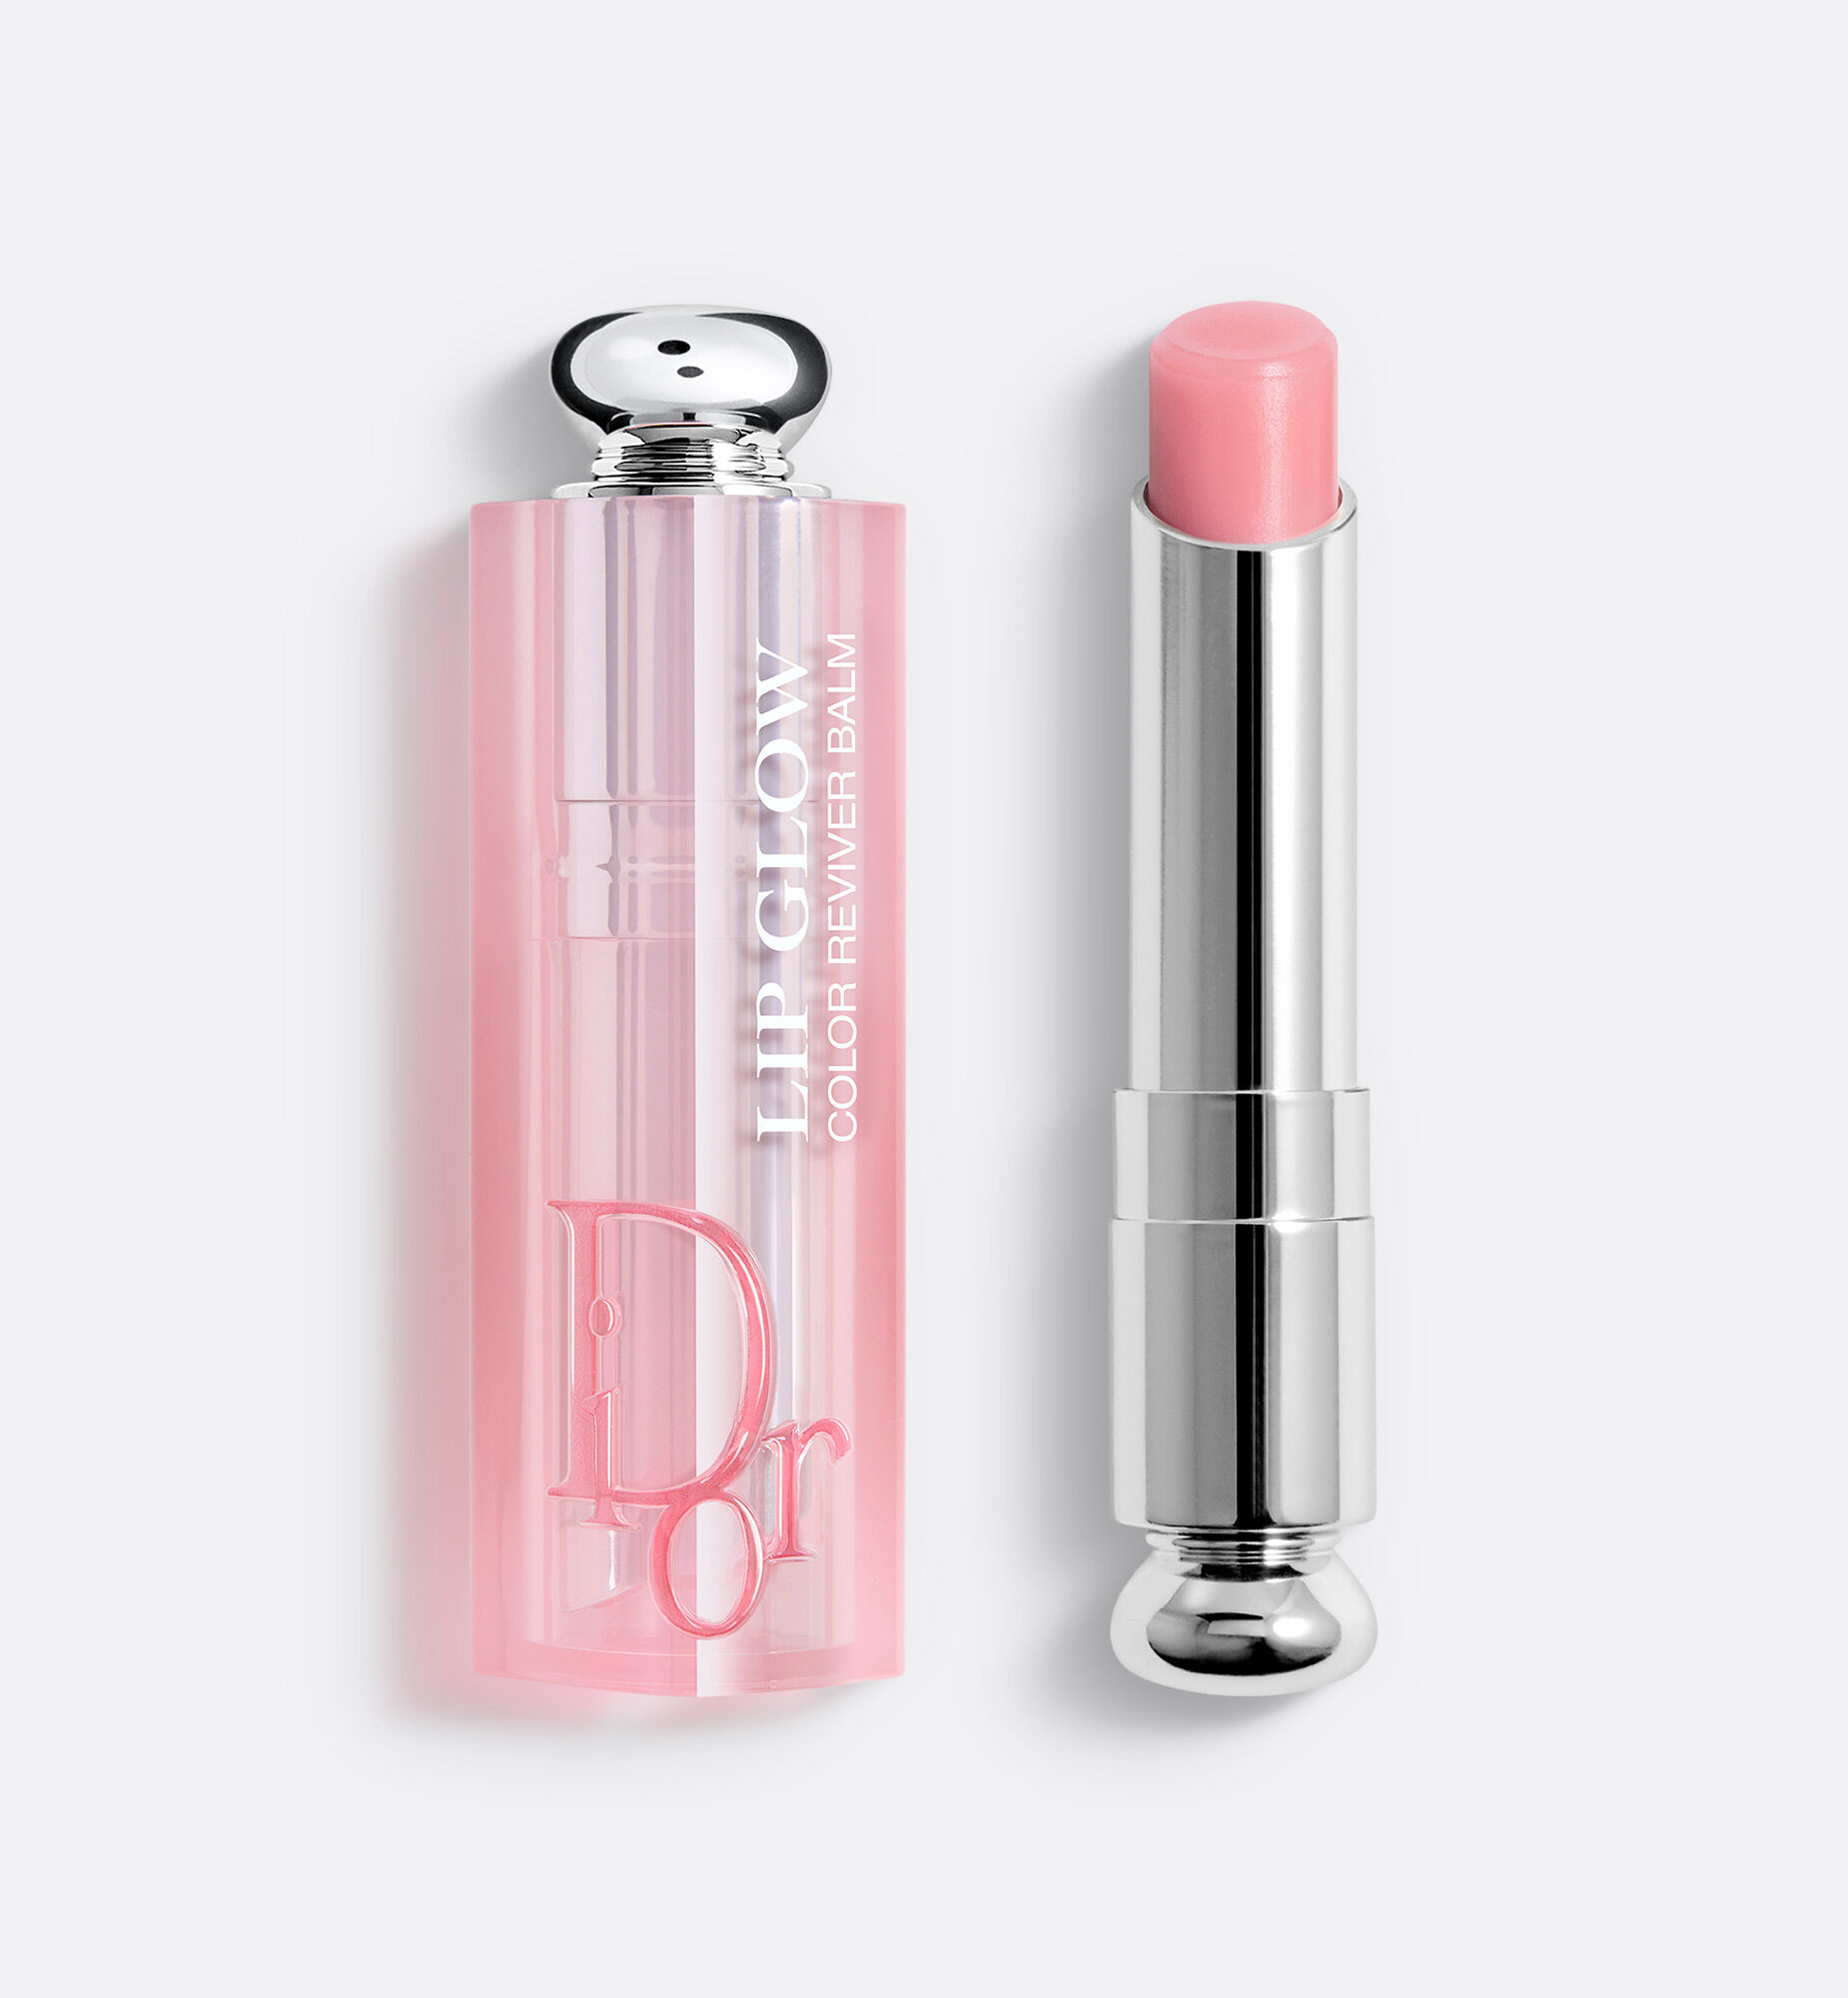 Отзыв о Тинт для губ Dior Addict Lip Tattoo  Свежий и вкусныйблагородный  розовый коралл в оттенке 451natural coral